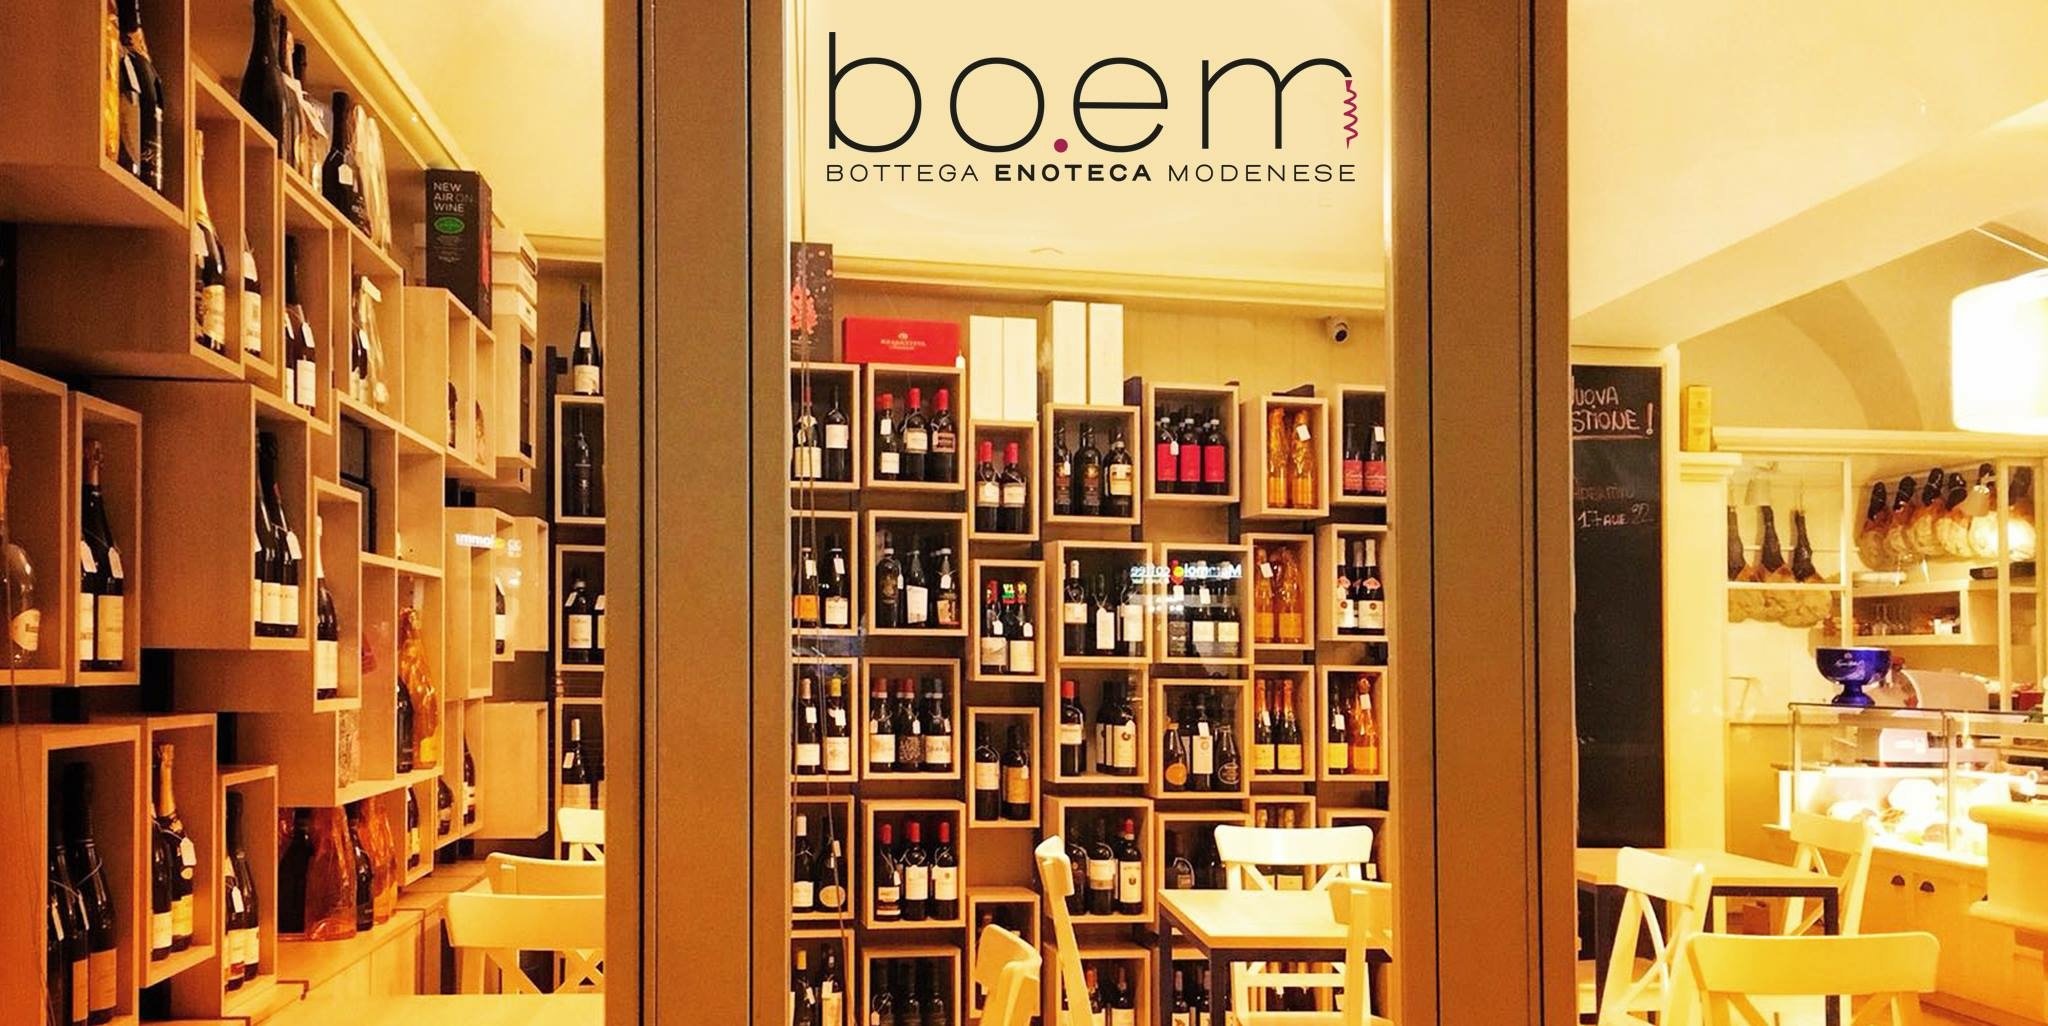 Bo.em - Bottega Enoteca Modenese, Modena